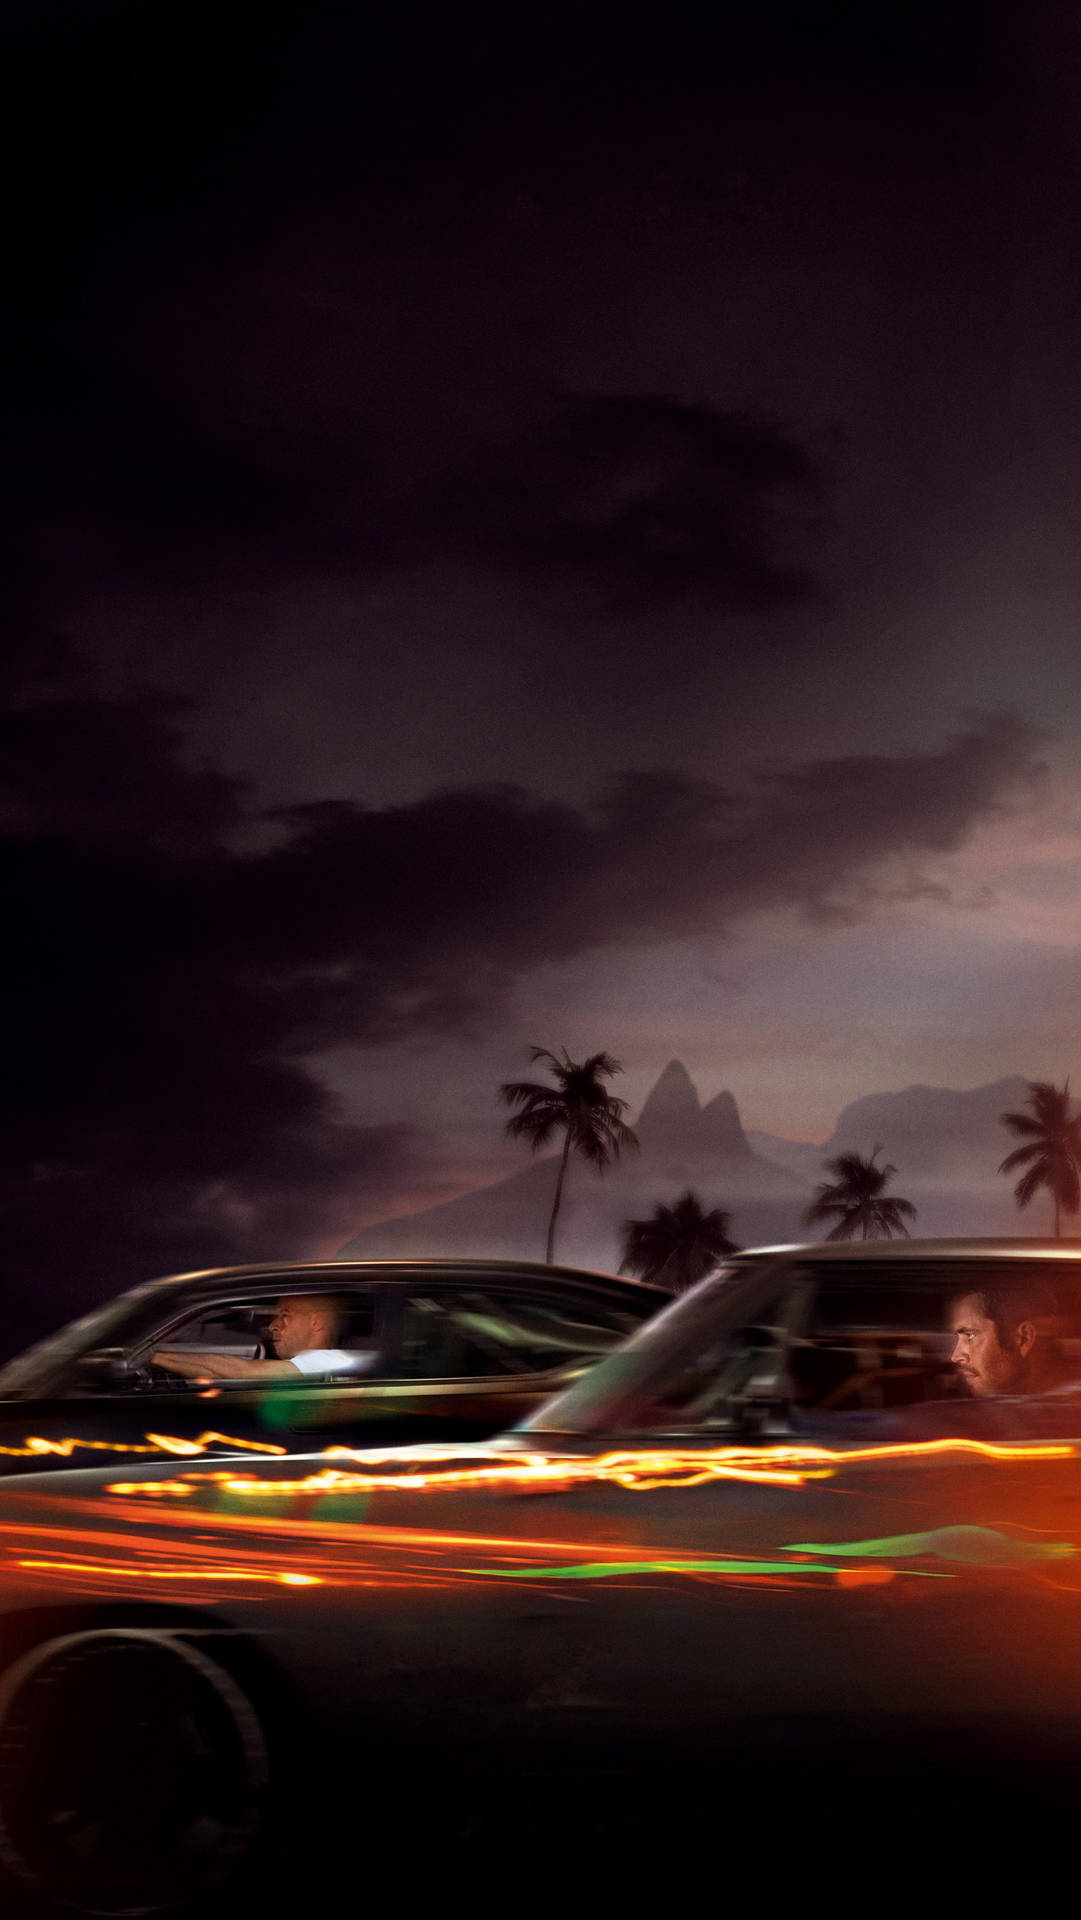 Paul Walker And Vin Diesel Driving Background